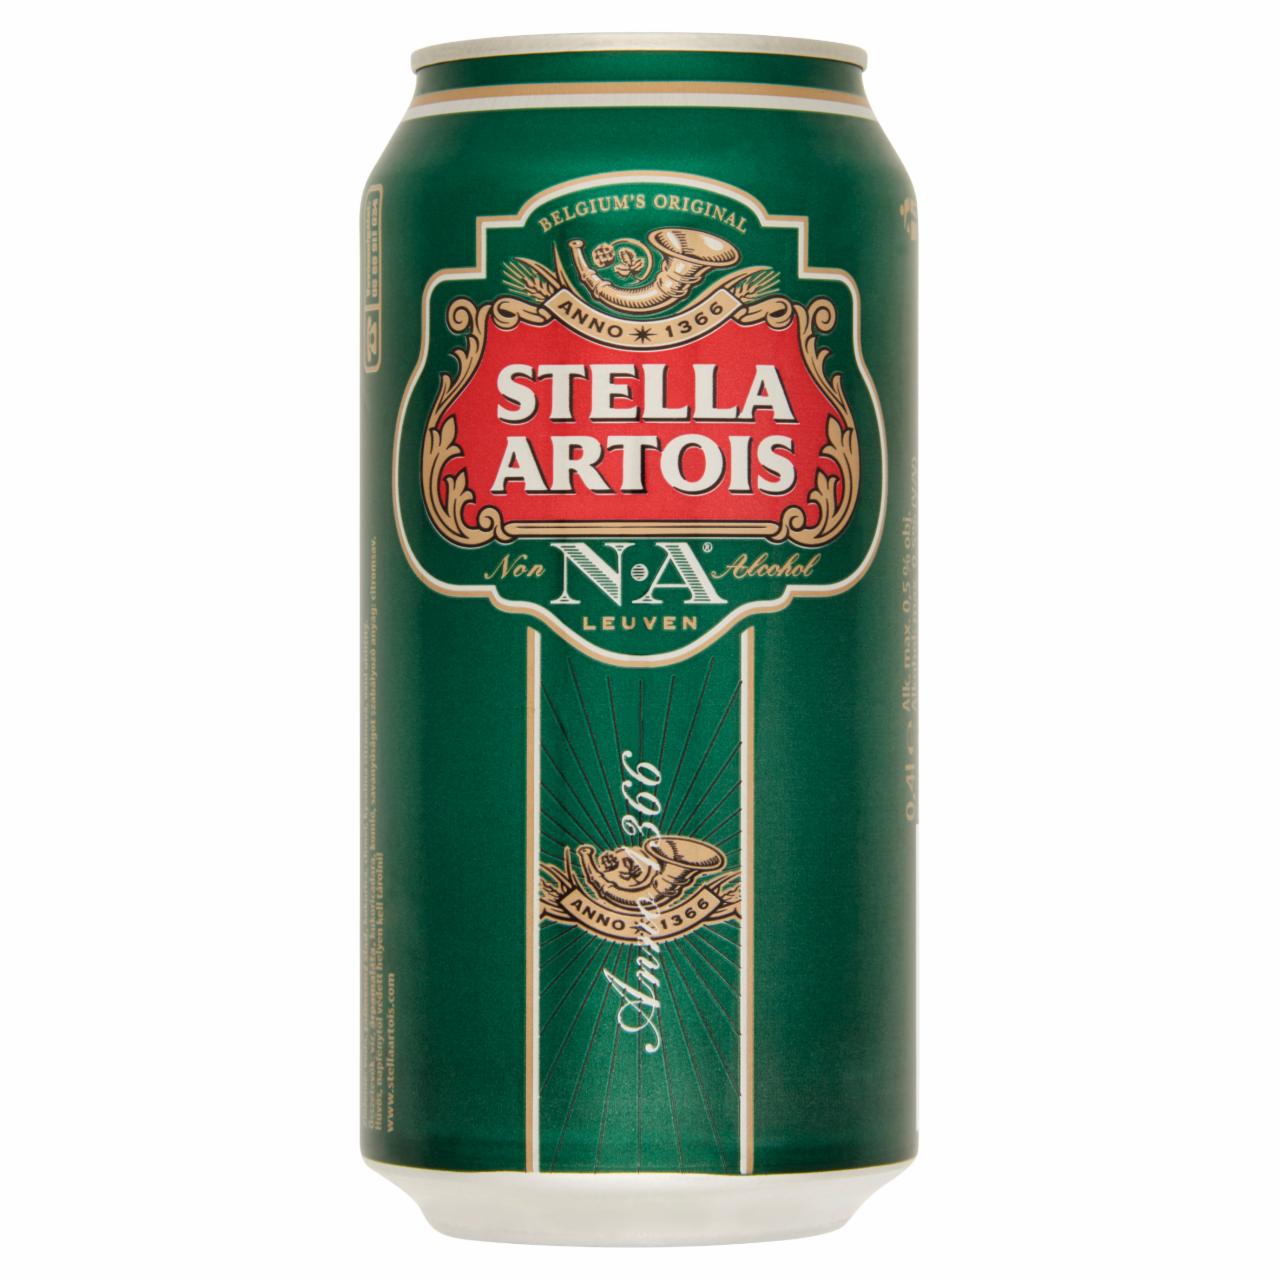 Képek - Stella Artois alkoholmentes világos sör 0,5% 0,4 l